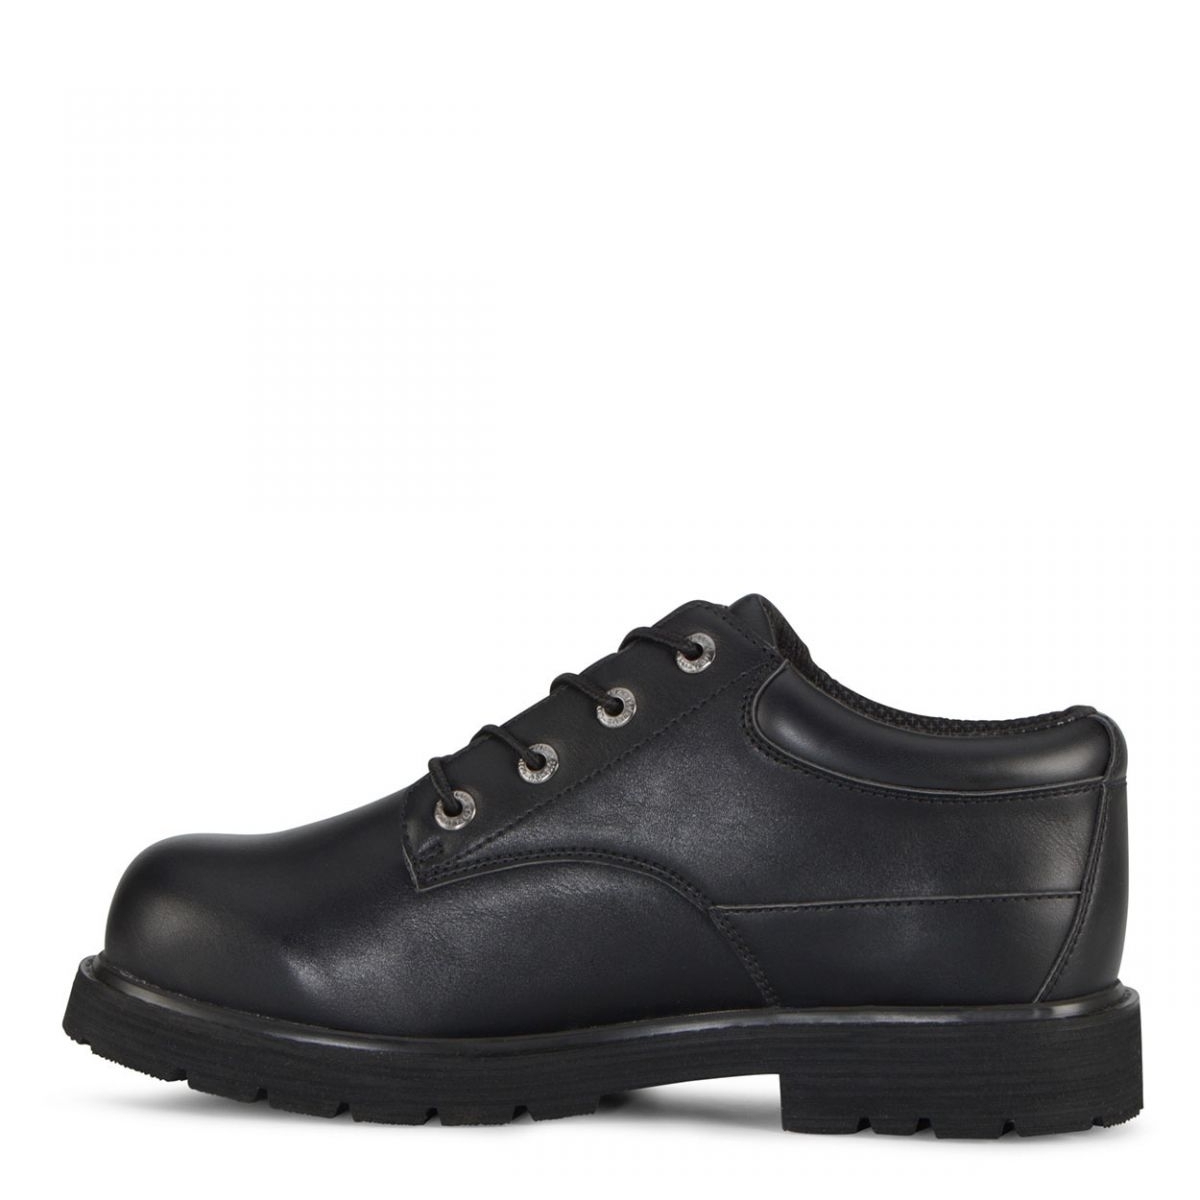 Lugz Men's Drifter Lo Lx Oxford Boot Black - MDRLXLV-001 BLACK - BLACK, 10